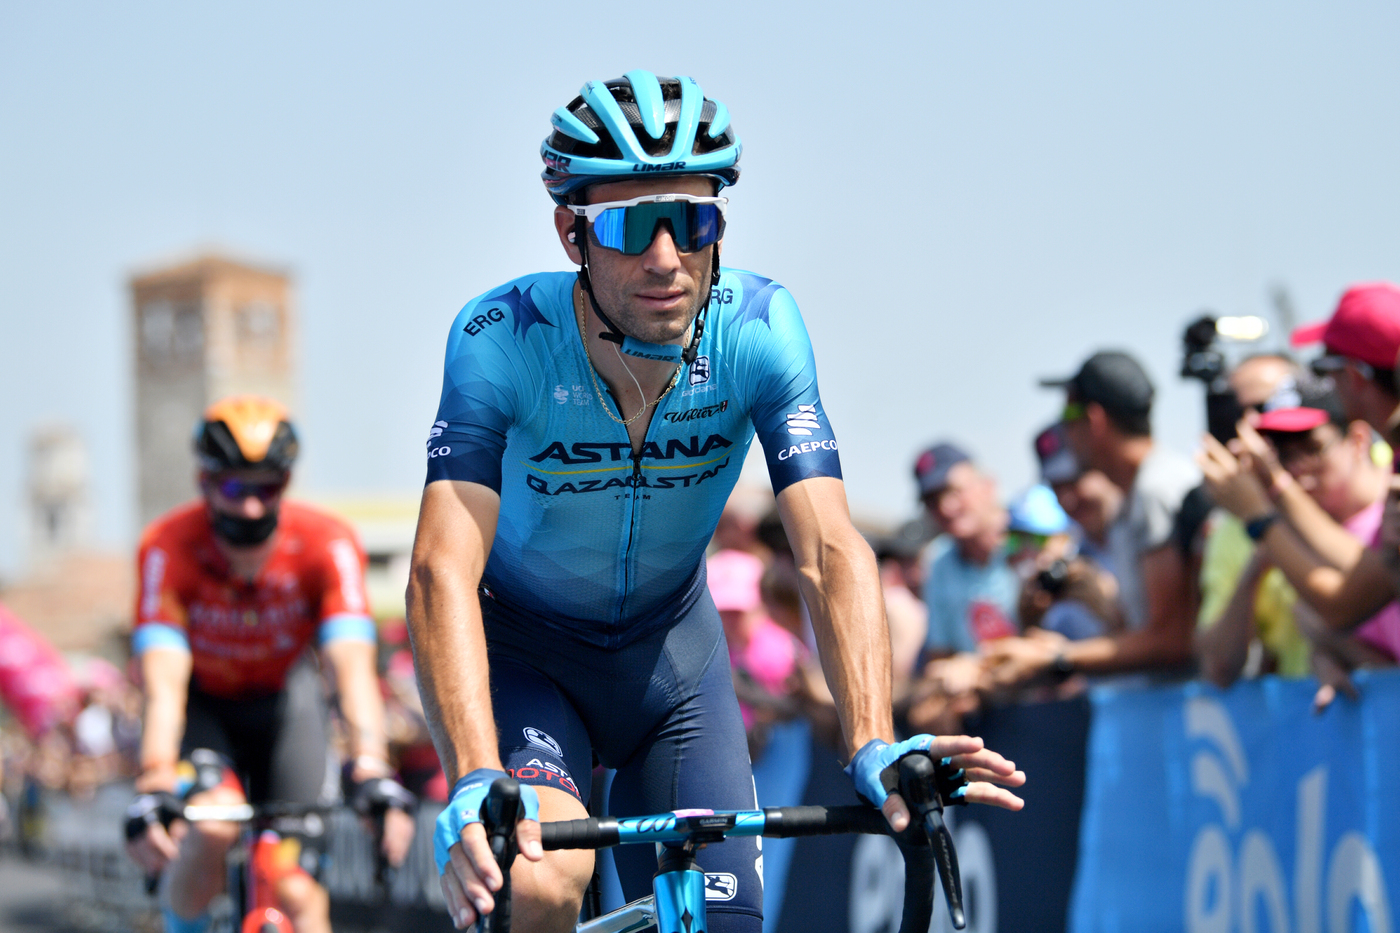 Ciclismo, Daniele Bennati: “La porta per Nibali è aperta, ma non è facile finire la Vuelta e volare in Australia”